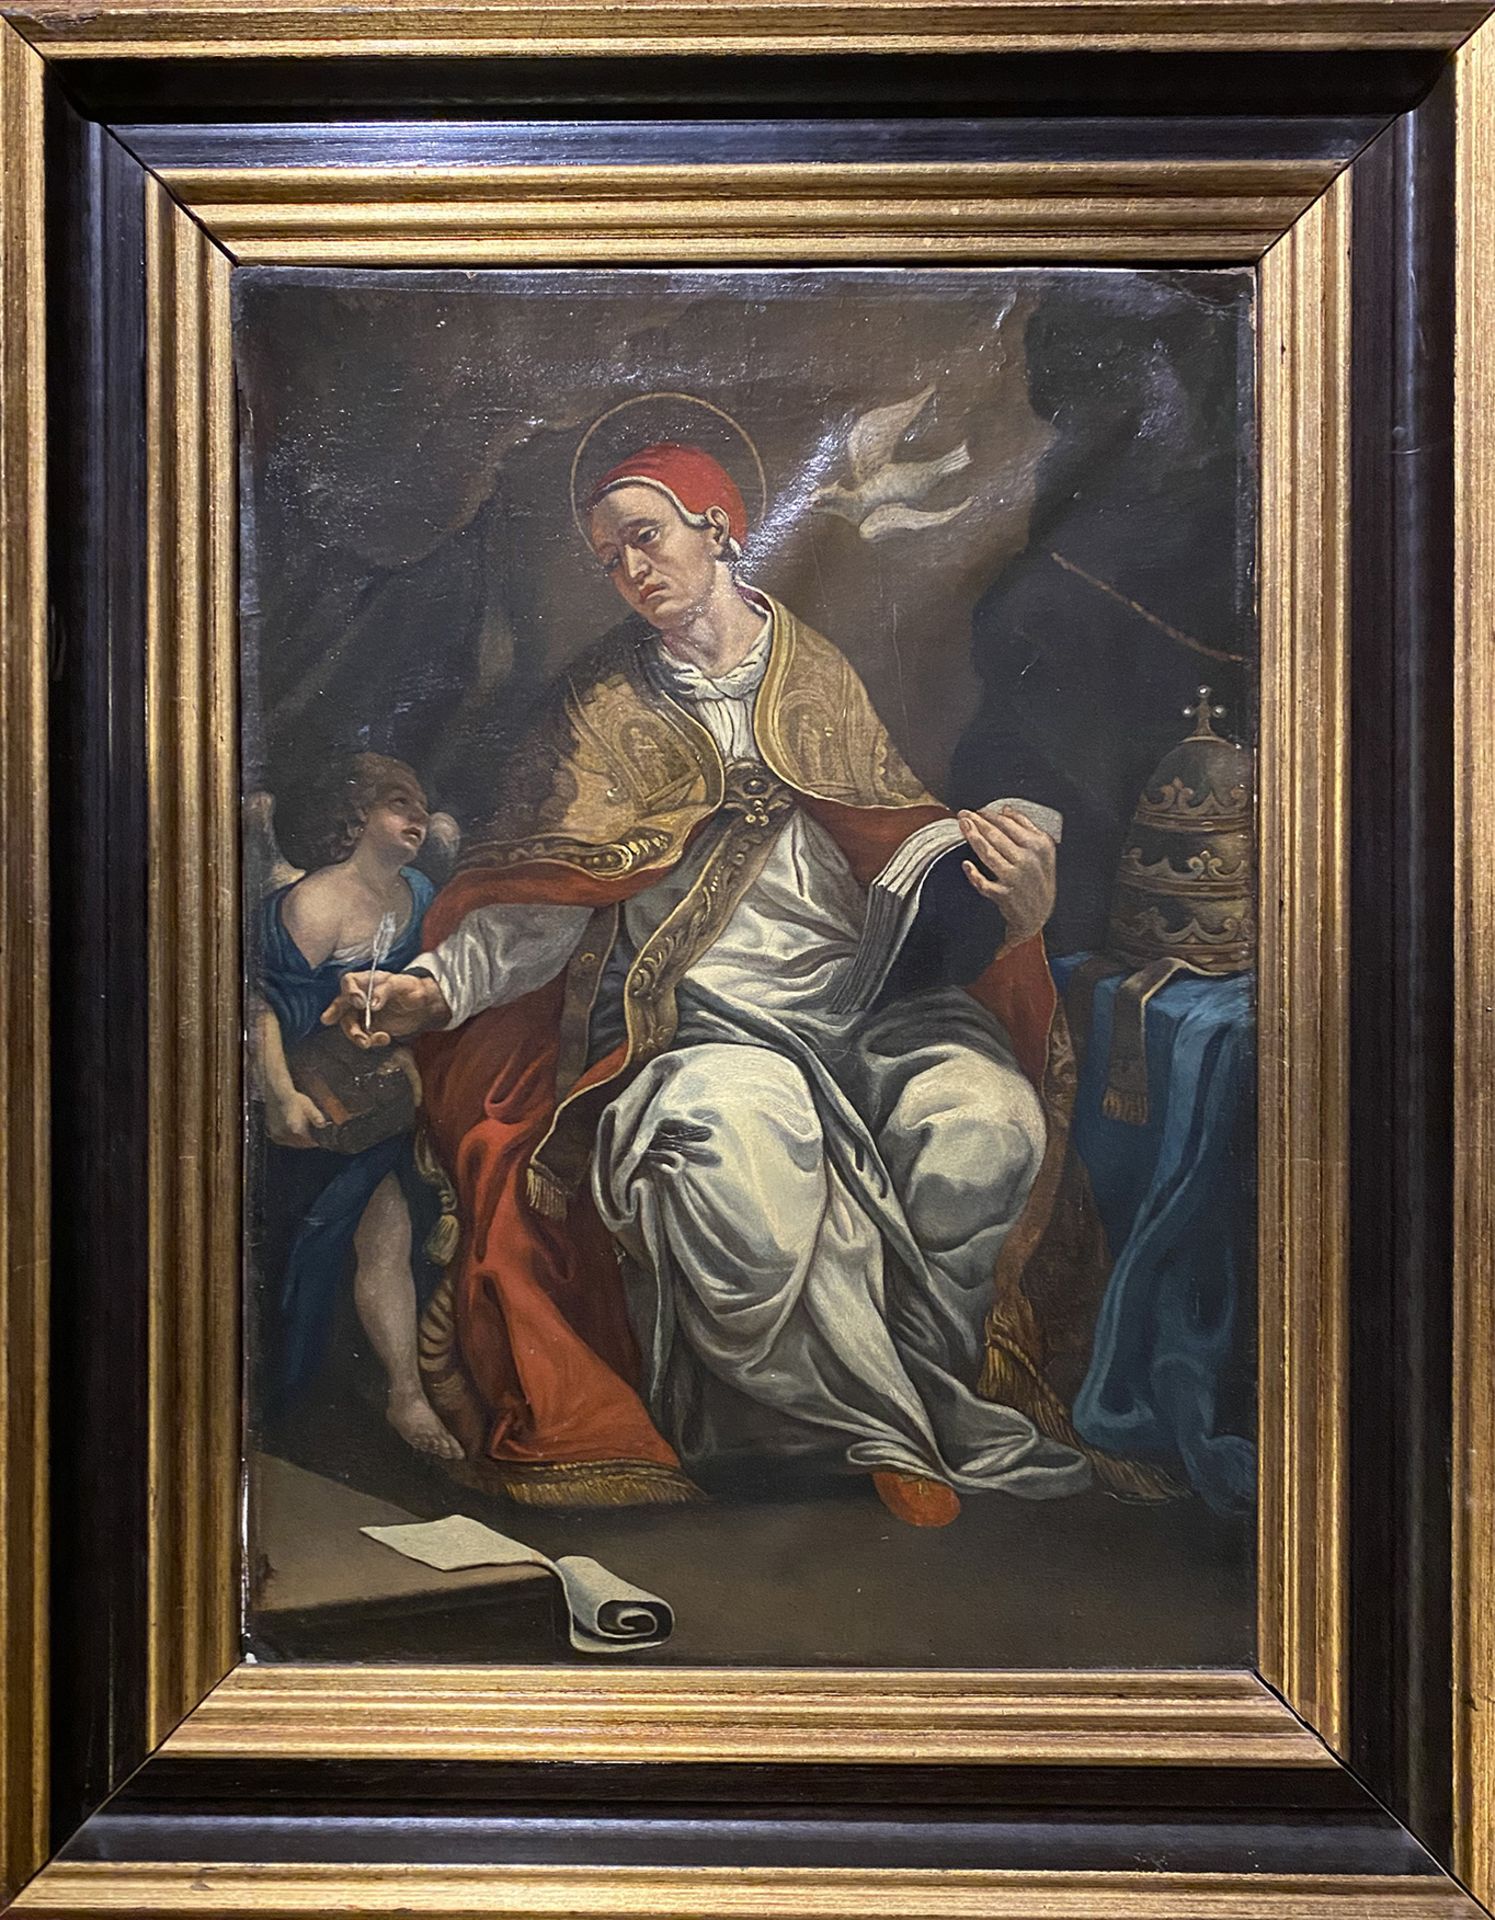 Unbekannter Maler, 17./18. Jh.; Gregor der Große, Kirchenvater, mit Buch und Feder in der Hand.